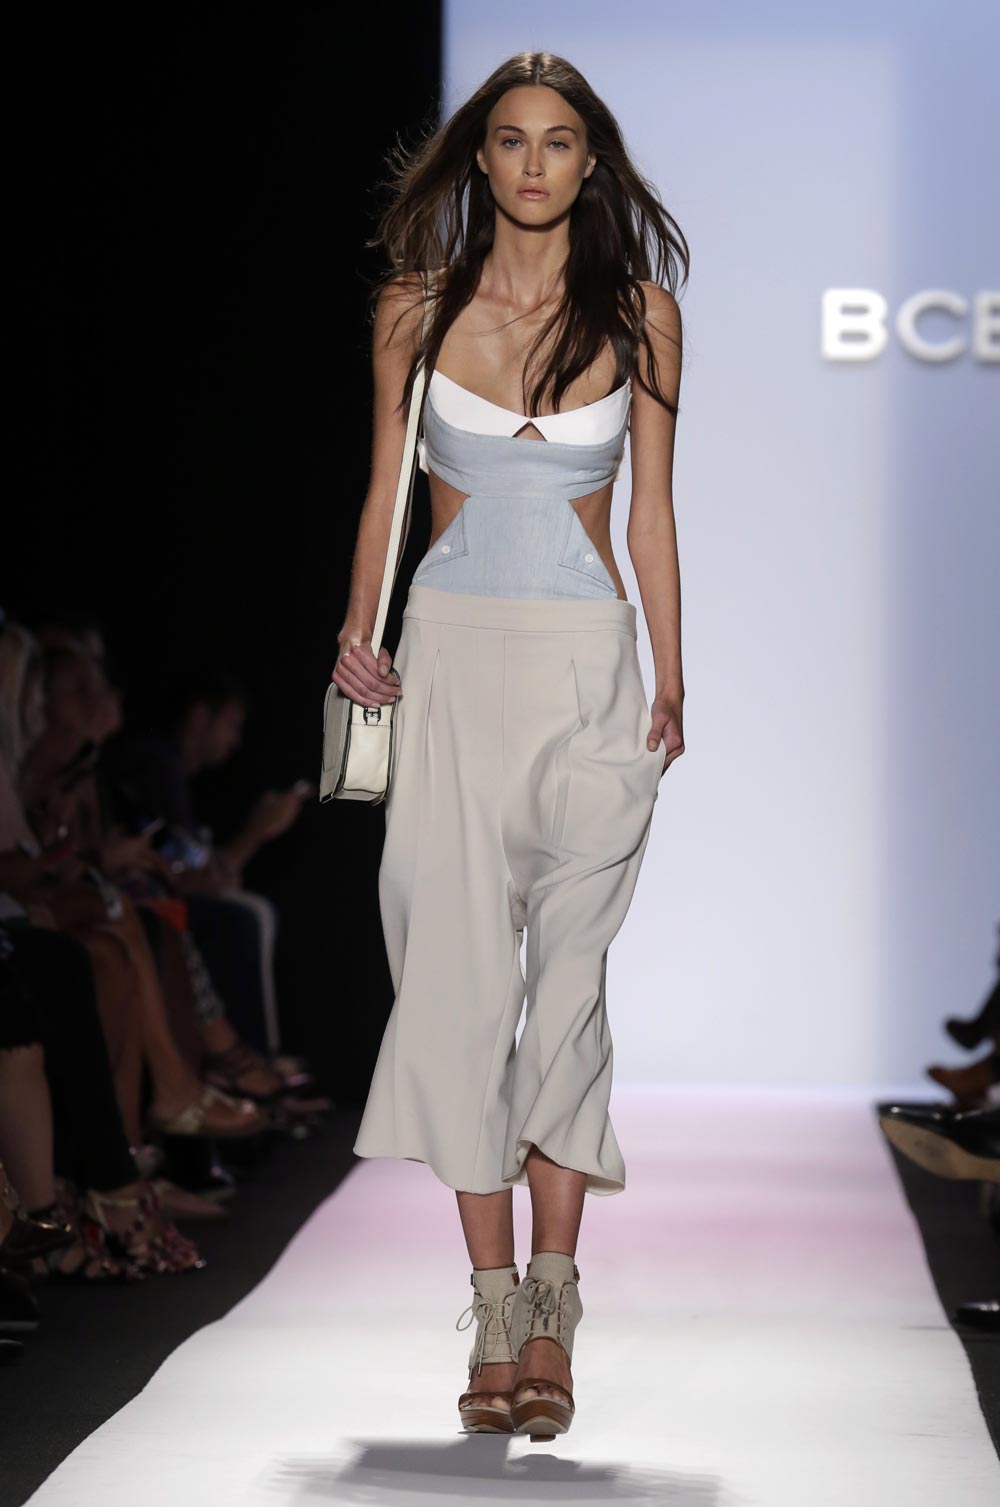 न्‍यूयॉर्क में फैशन वीक के दौरान बीसीबीजी मैक्‍स एजरिया स्प्रिंग 2014 कलेक्‍शन को पेश करती हुई एक मॉडल।